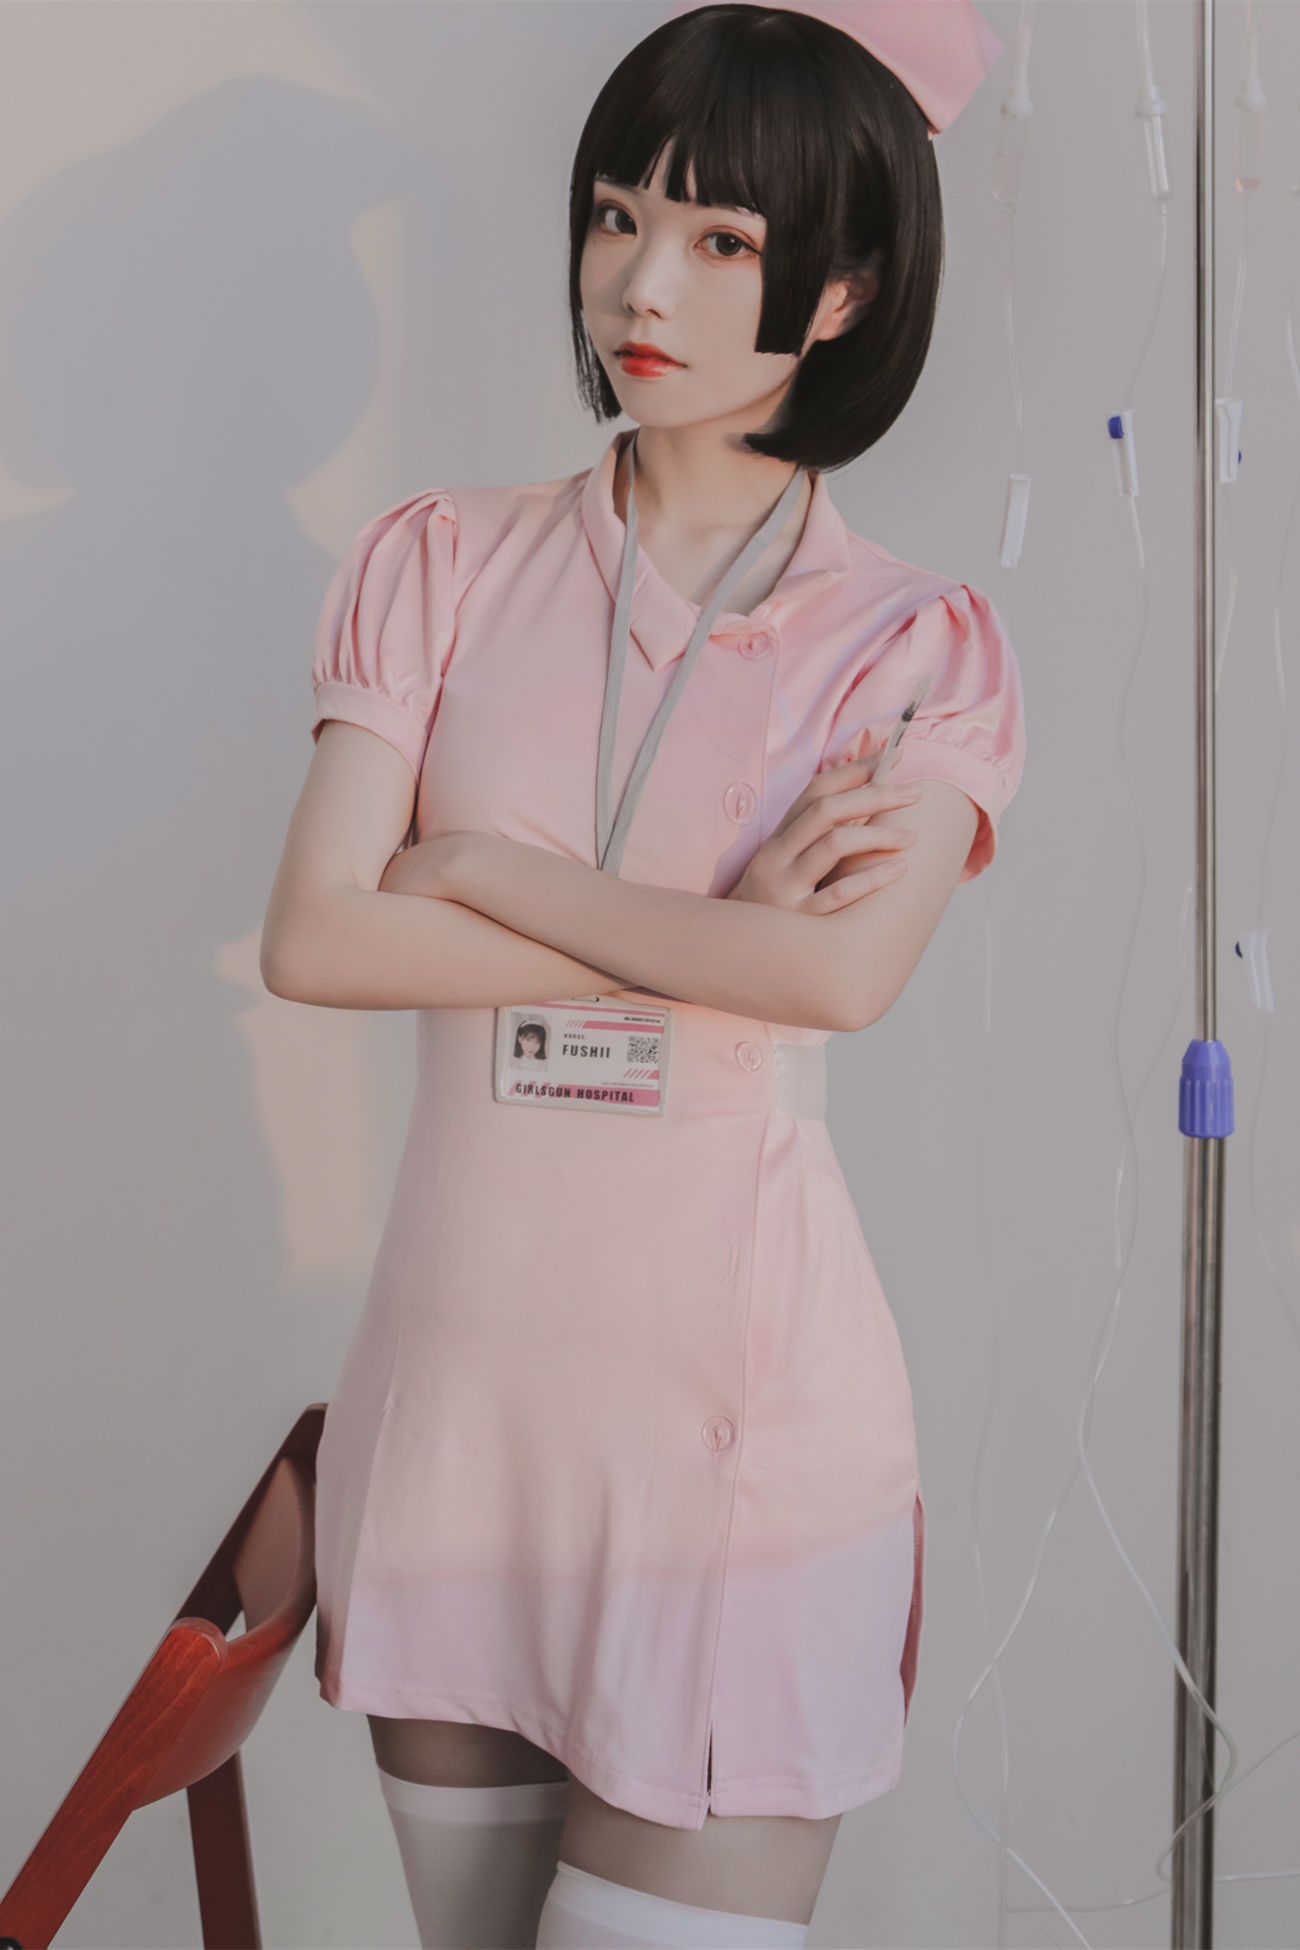 微博美少女Fushii海堂Cosplay性感写真护士 (1)